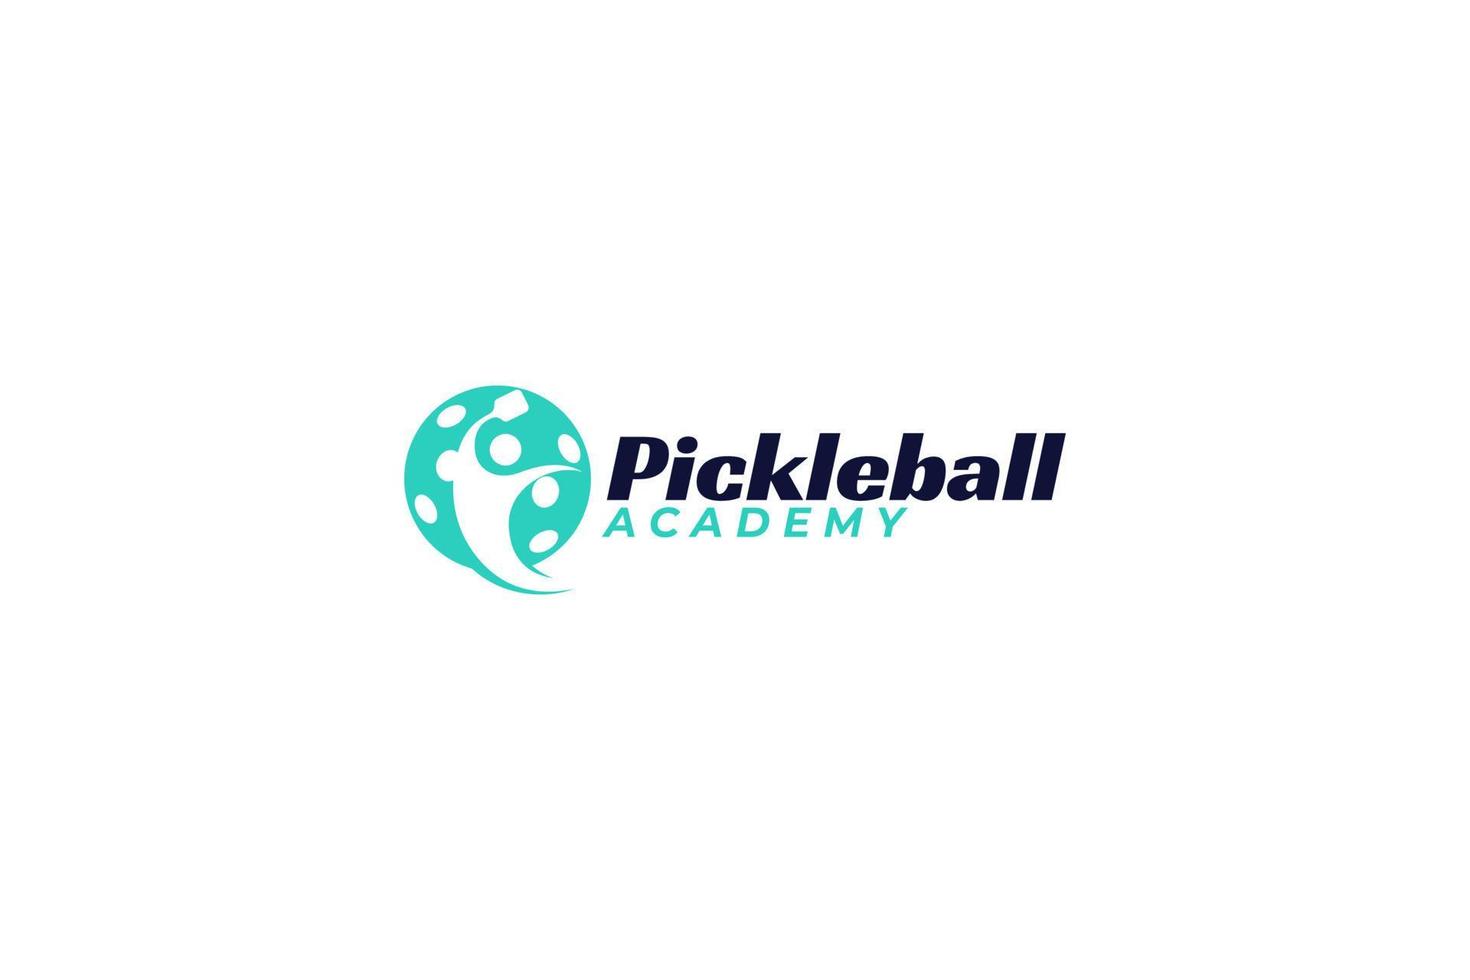 Pickleball-Akademie-Logo für jedes Unternehmen, insbesondere für Sporttraining, Team, Club, Community usw. vektor